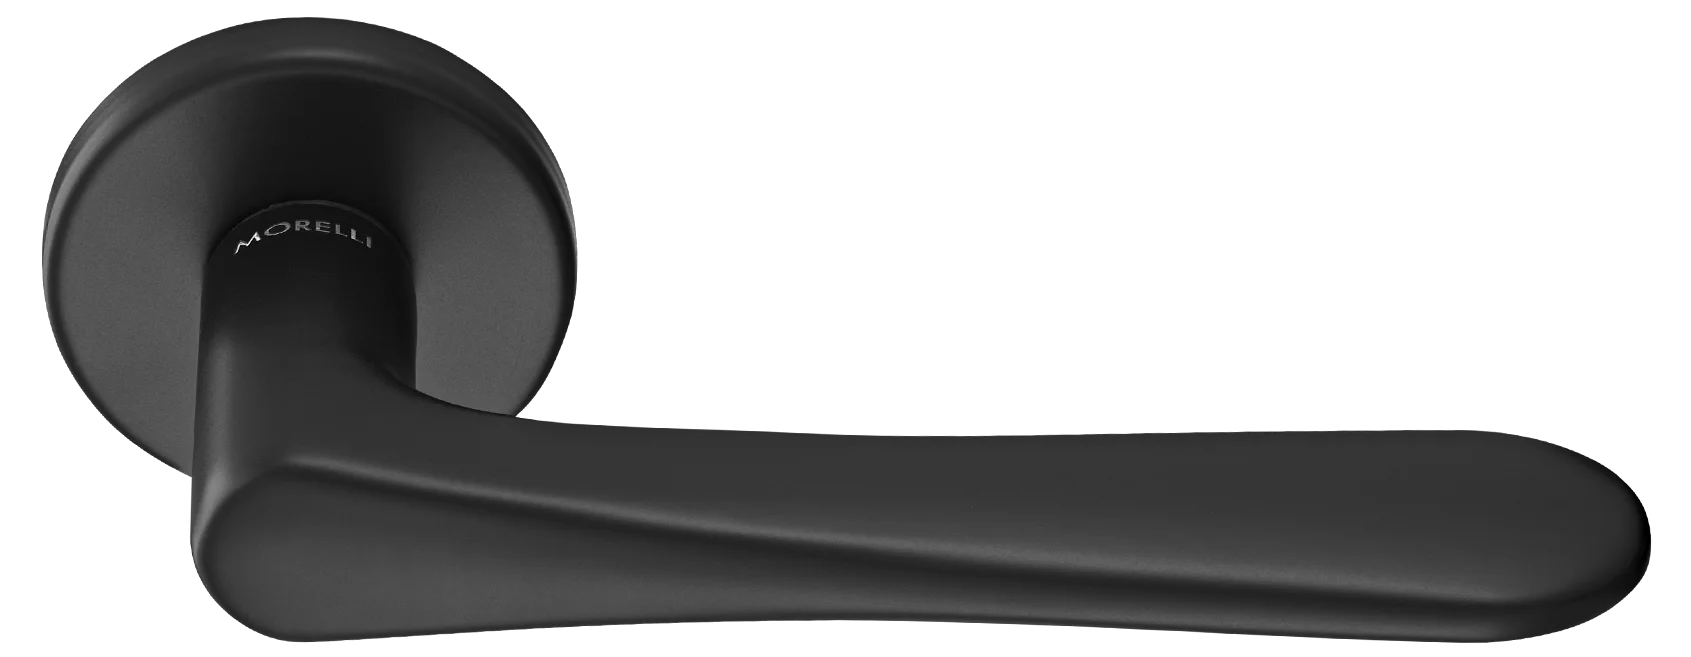 AULA R5 NERO, ручка дверная на розетке 7мм, цвет -  черный фото купить Рязань